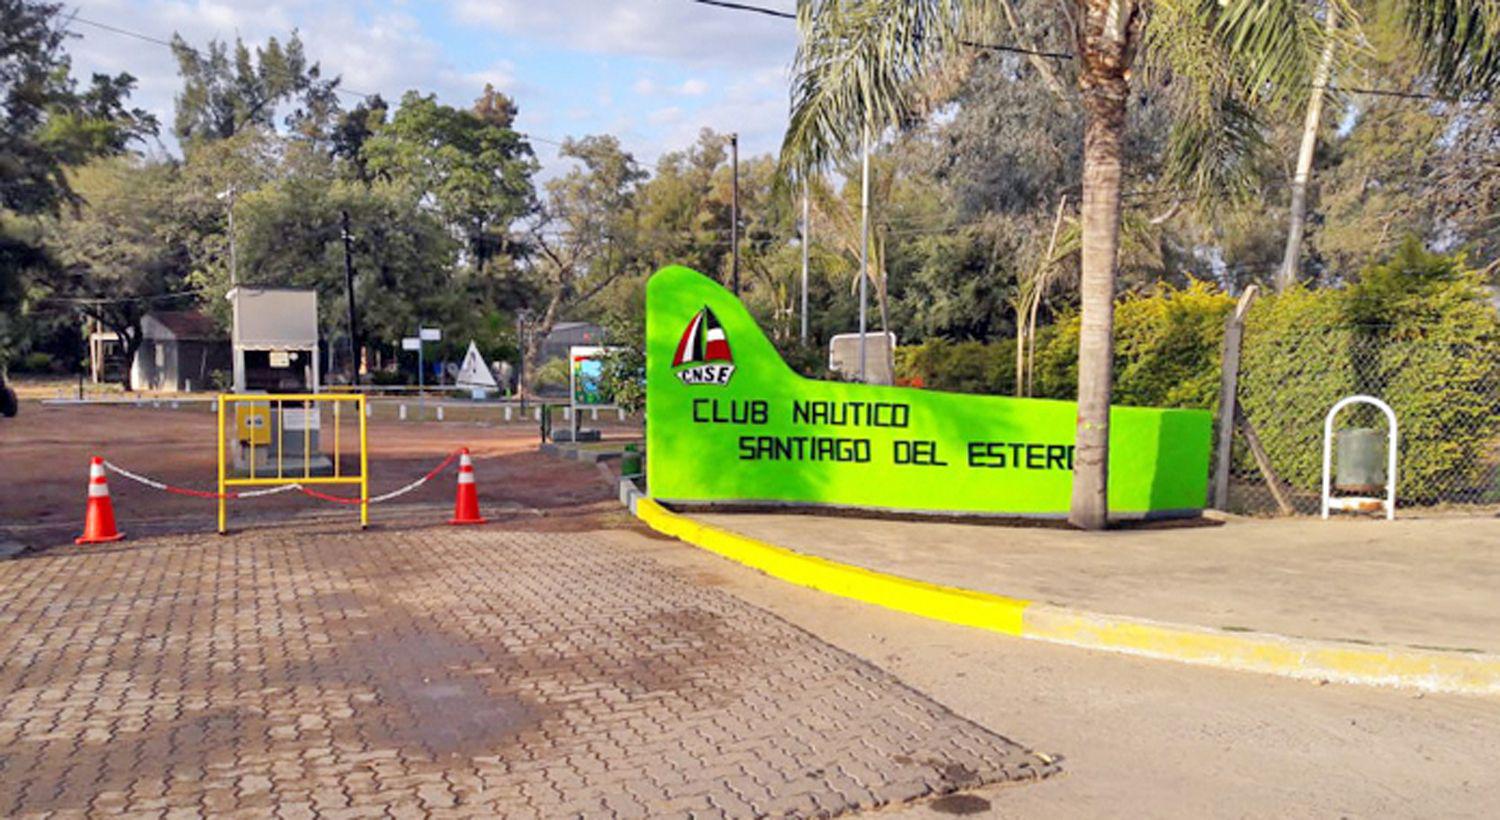 El Club Naacuteutico Santiago del Estero invita a socios al plan de regularizacioacuten